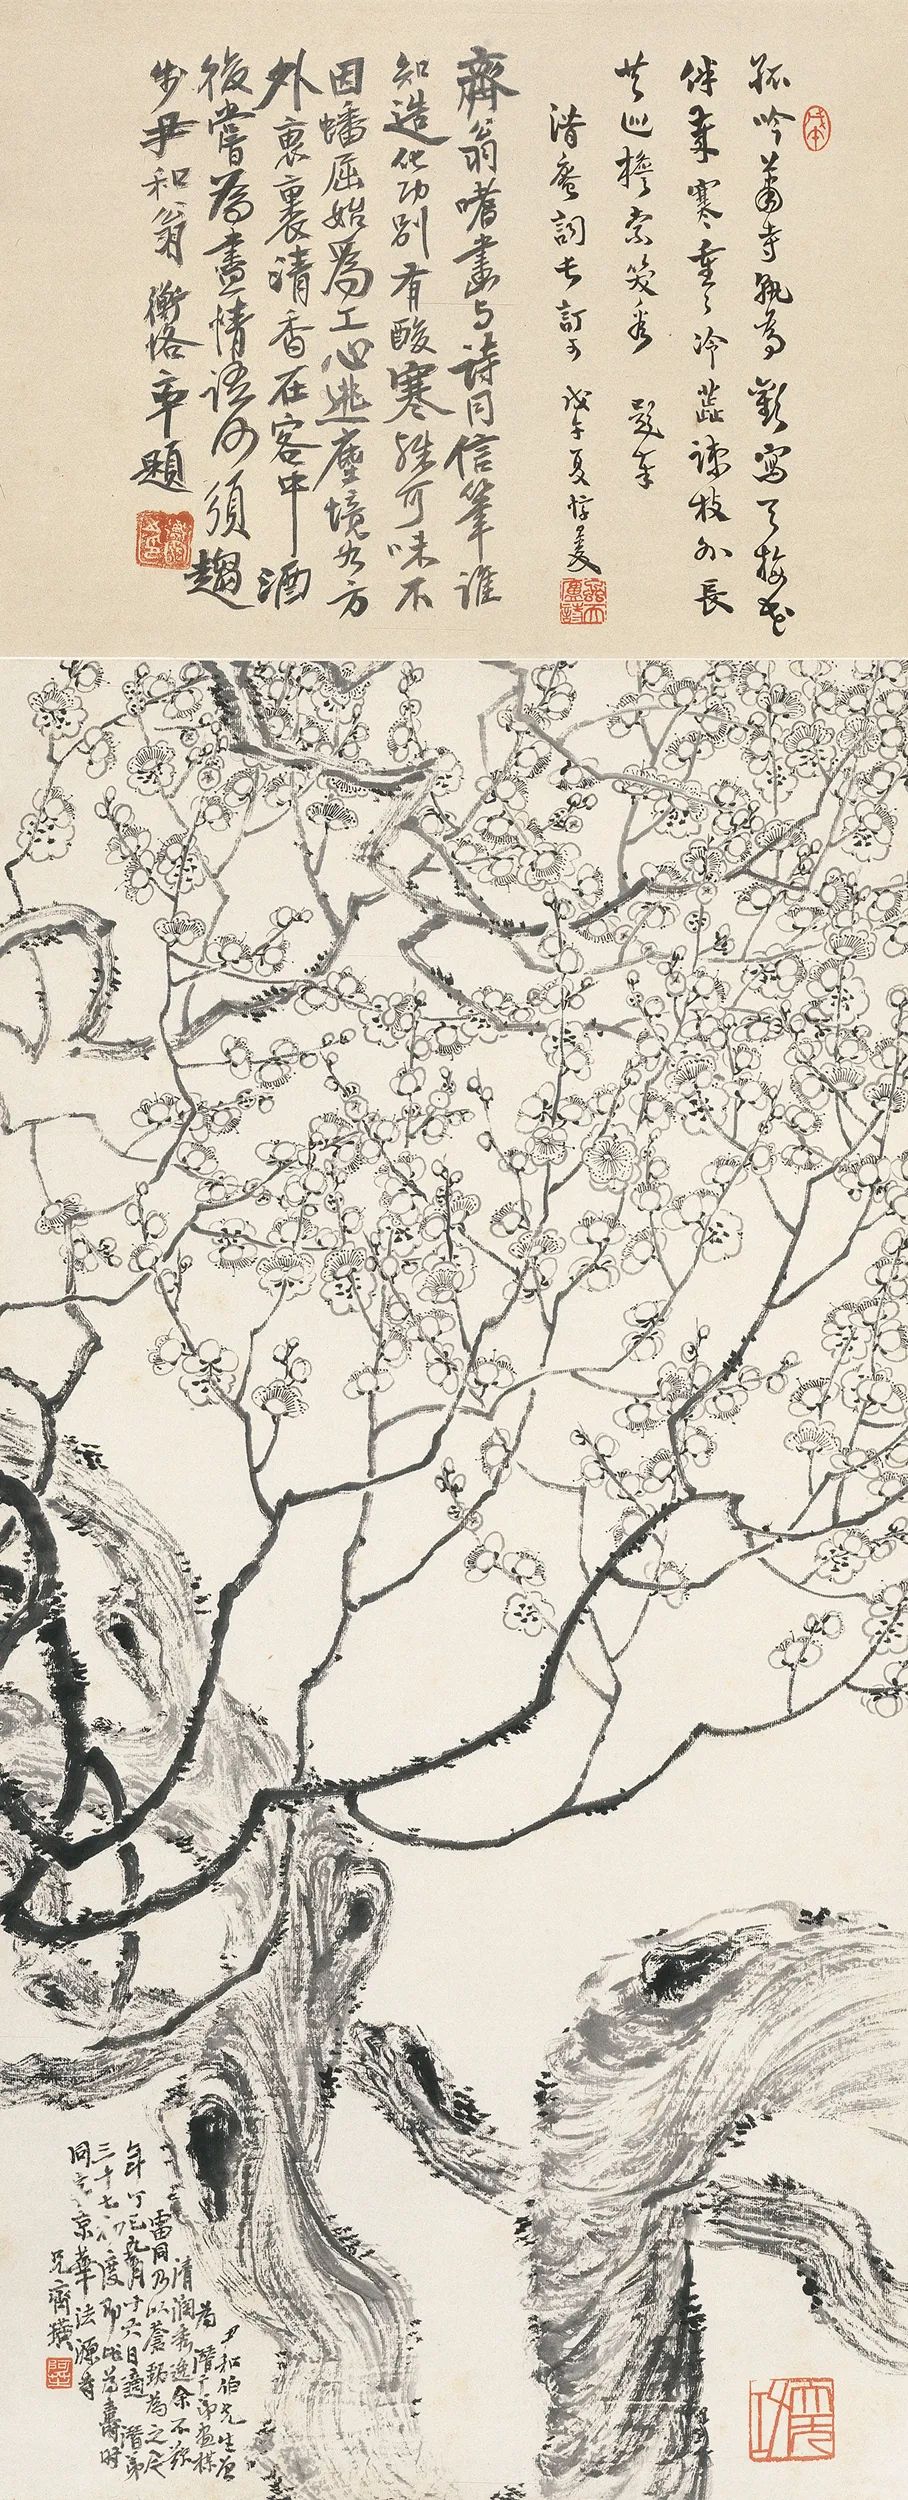 齐白石《墨梅》 1917年 116×42.5cm 轴 纸本墨笔 北京画院藏